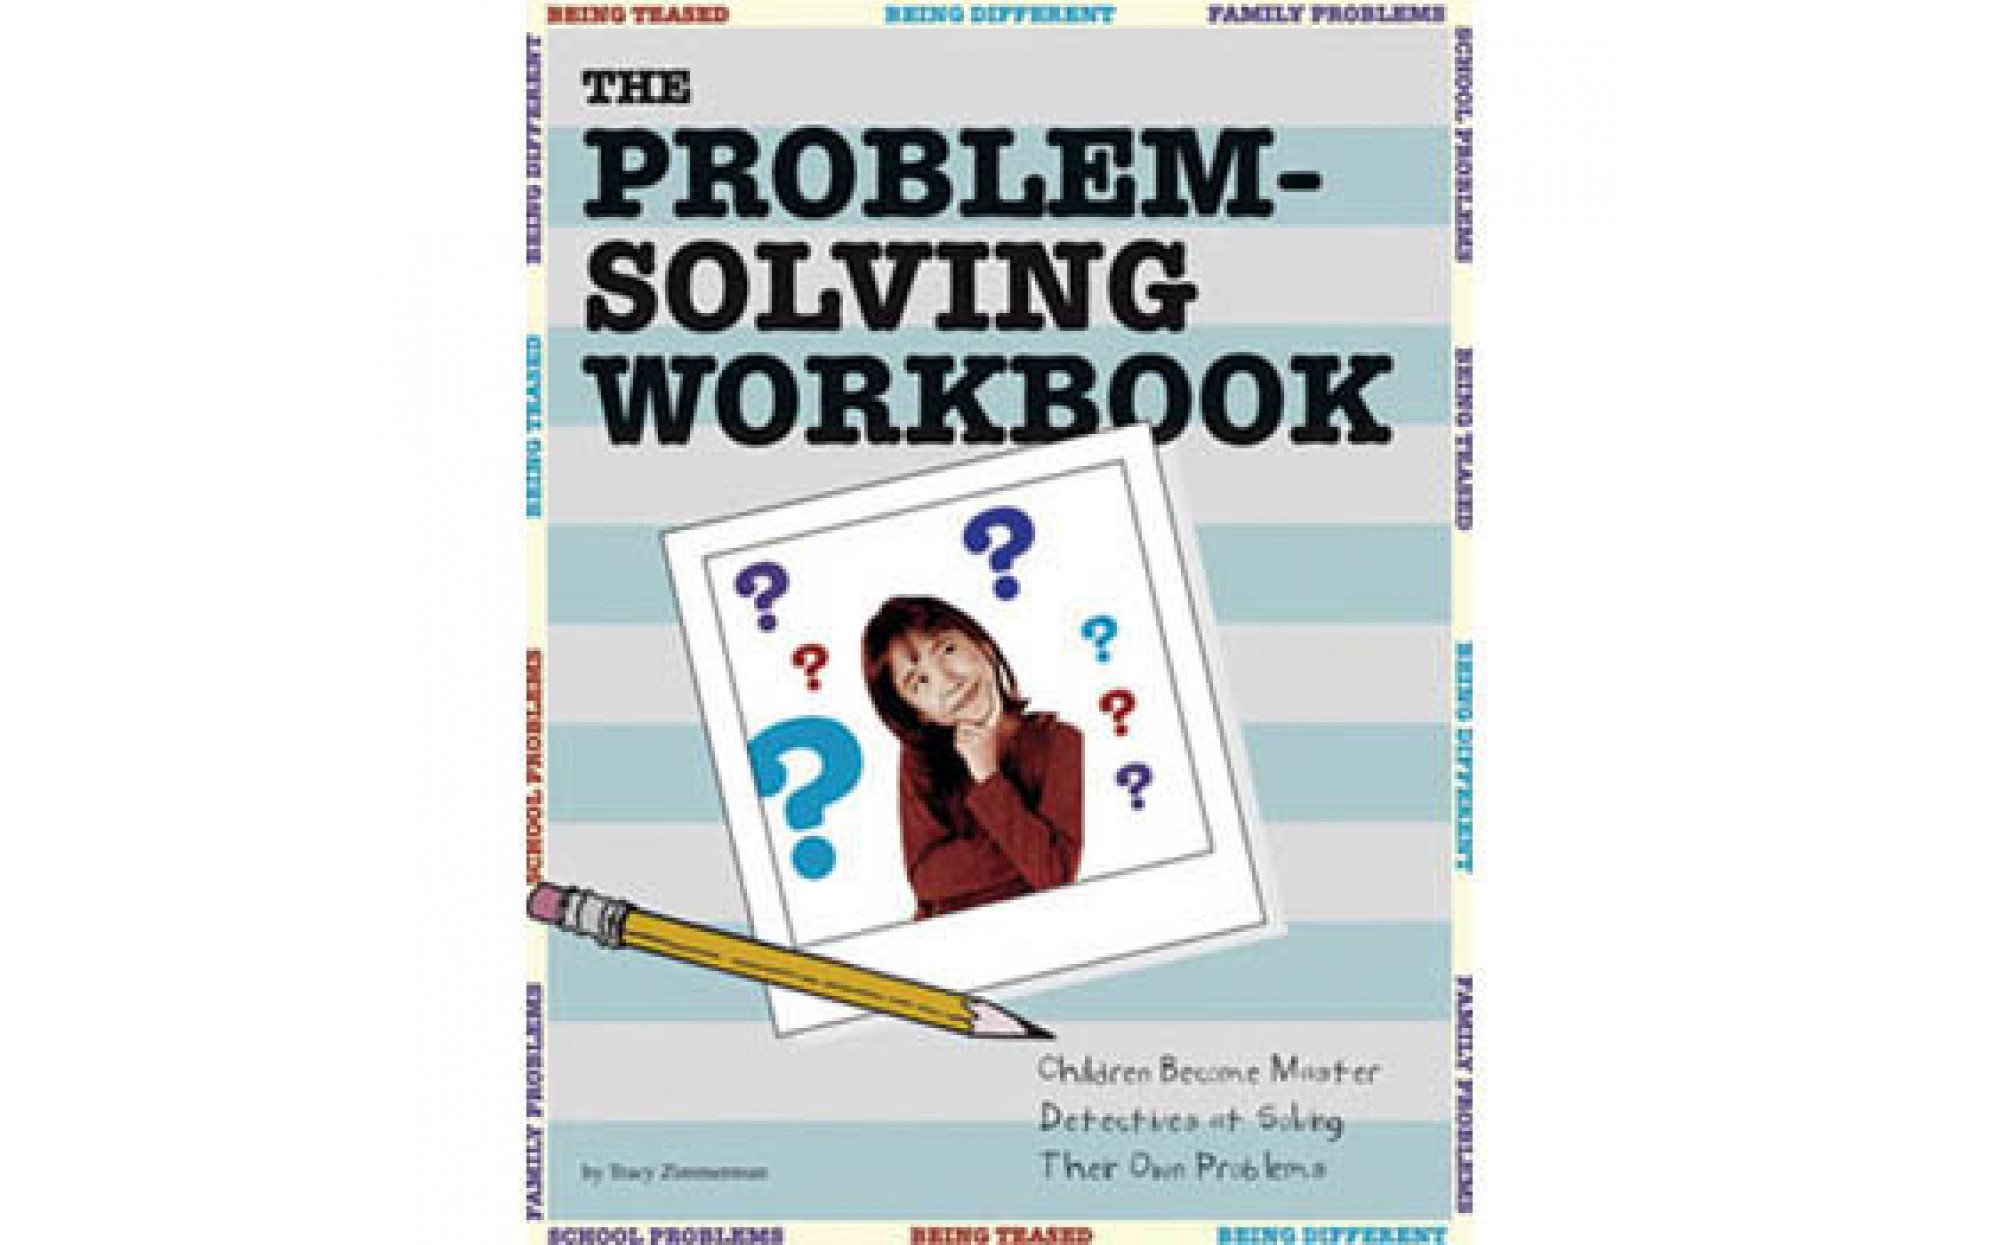 problem solving skills book